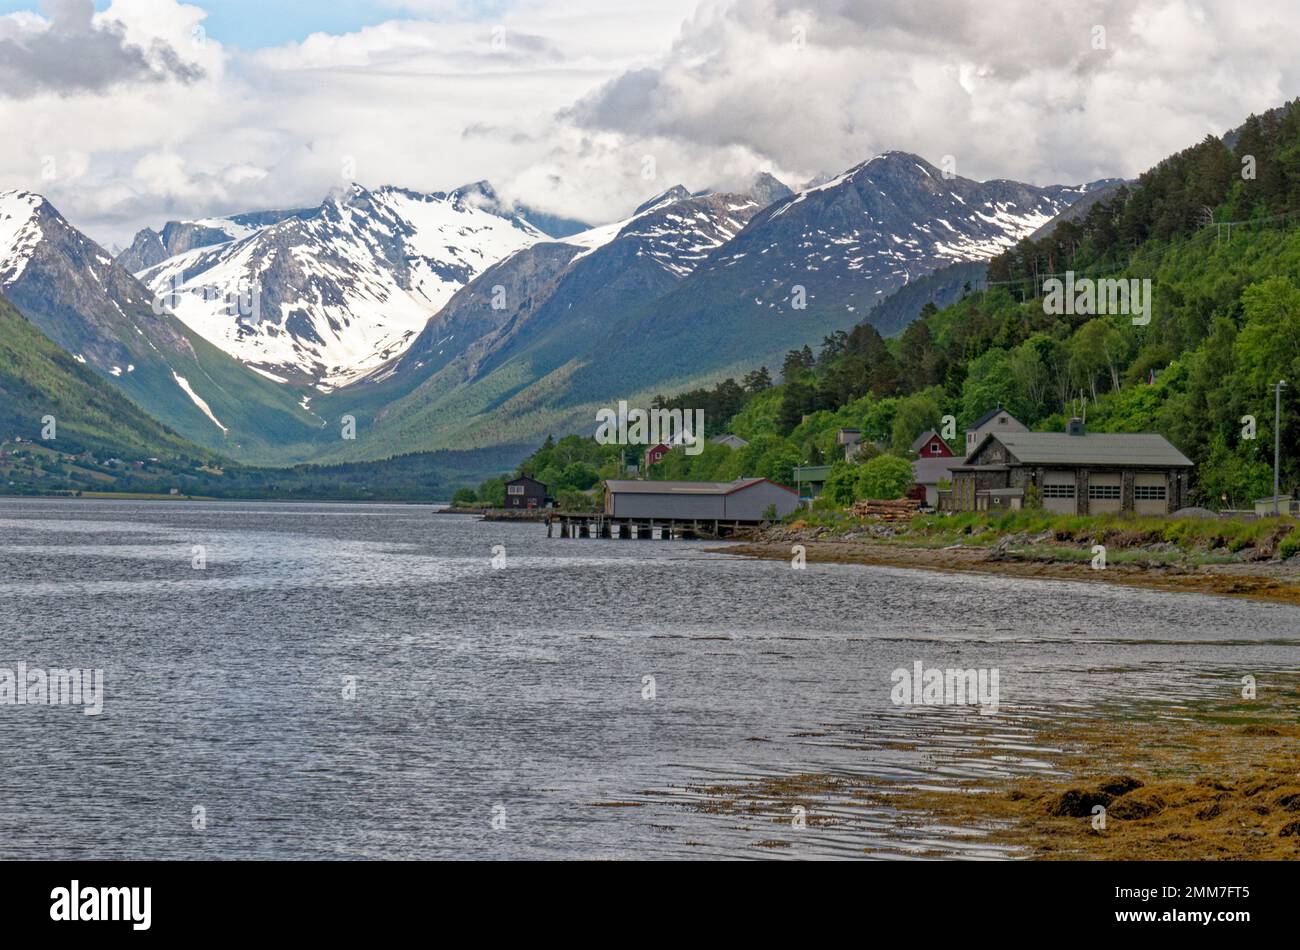 Magnifique paysage de fjord norvégien en été - Andalsnes - Norvège. 20.06.2012 Banque D'Images